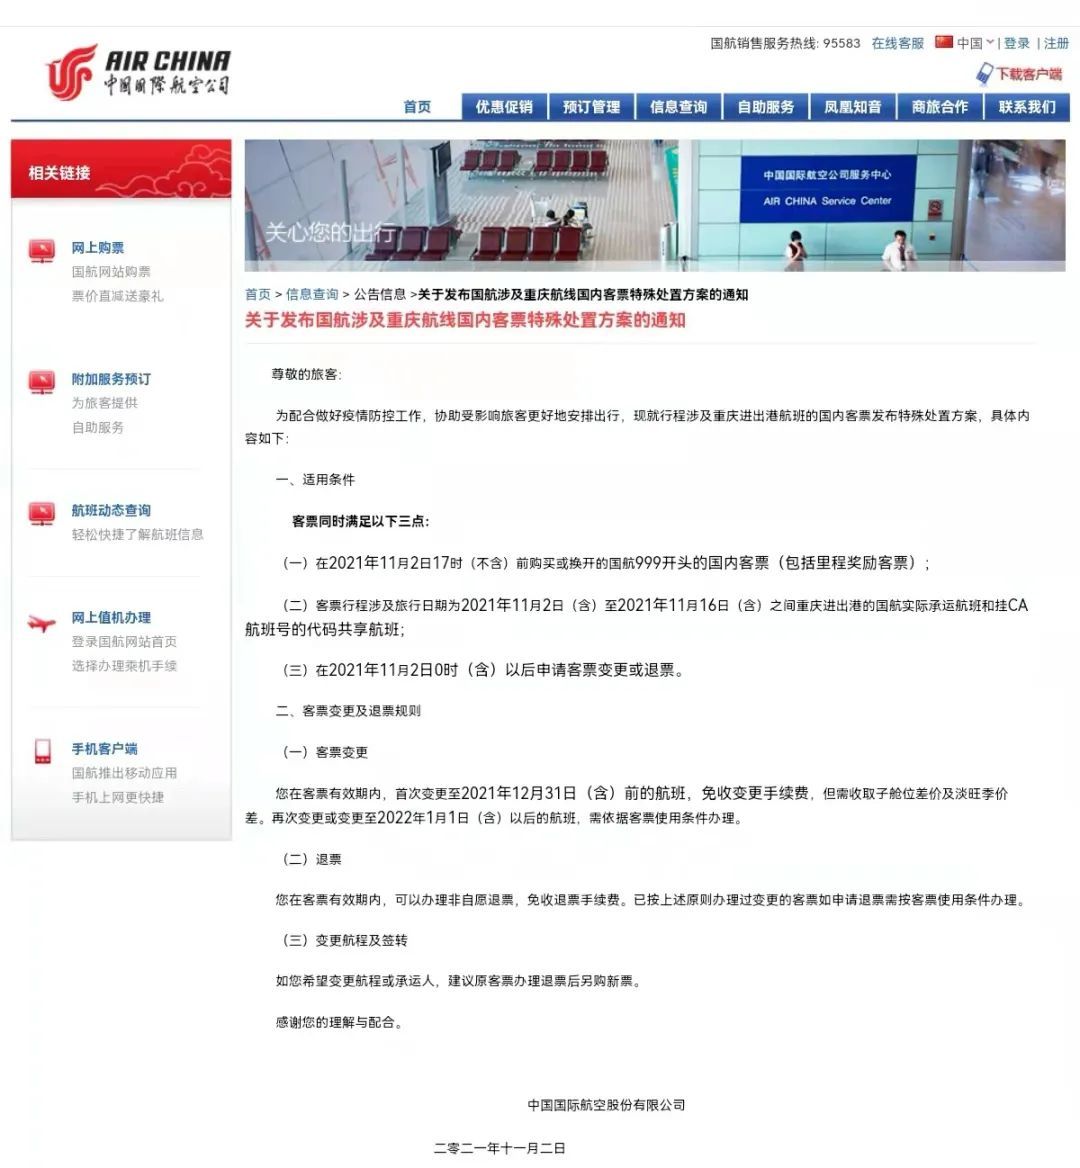 多家航司发布通知 涉及重庆、成都等地机票退改